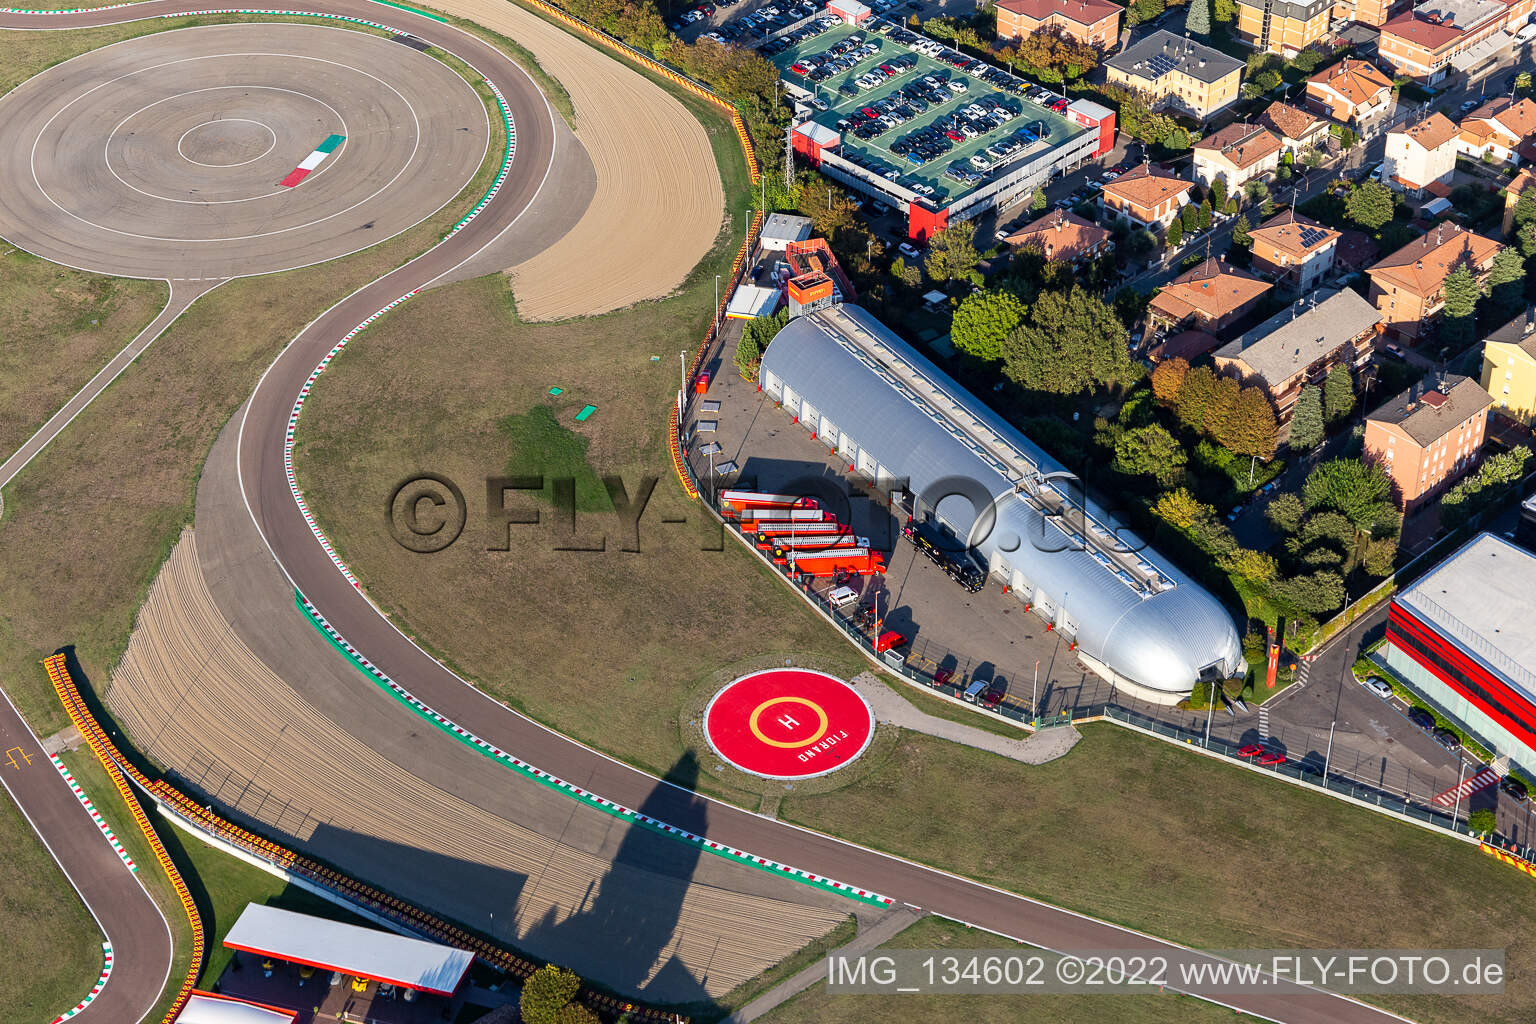 Ferrari Formula 1 race track, Pista di Fiorano, Circuito di Fiorano in Fiorano Modenese in the state Modena, Italy from a drone